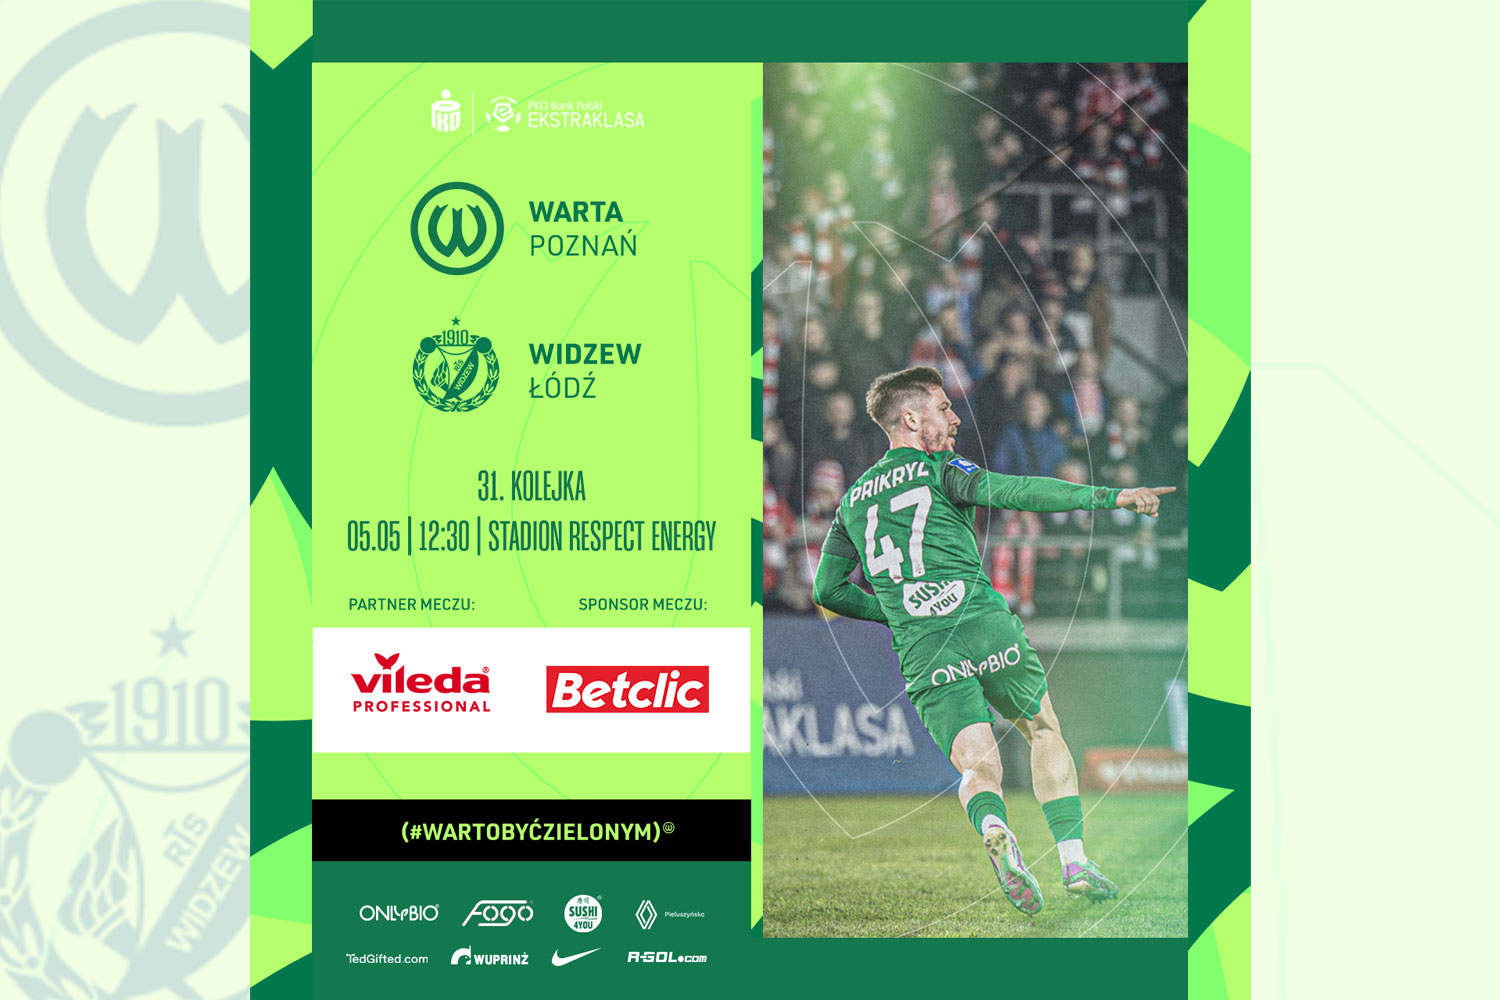 Betclic, Vileda Professional - sponsor, partner meczu Warta Poznań - Widzew Łódź